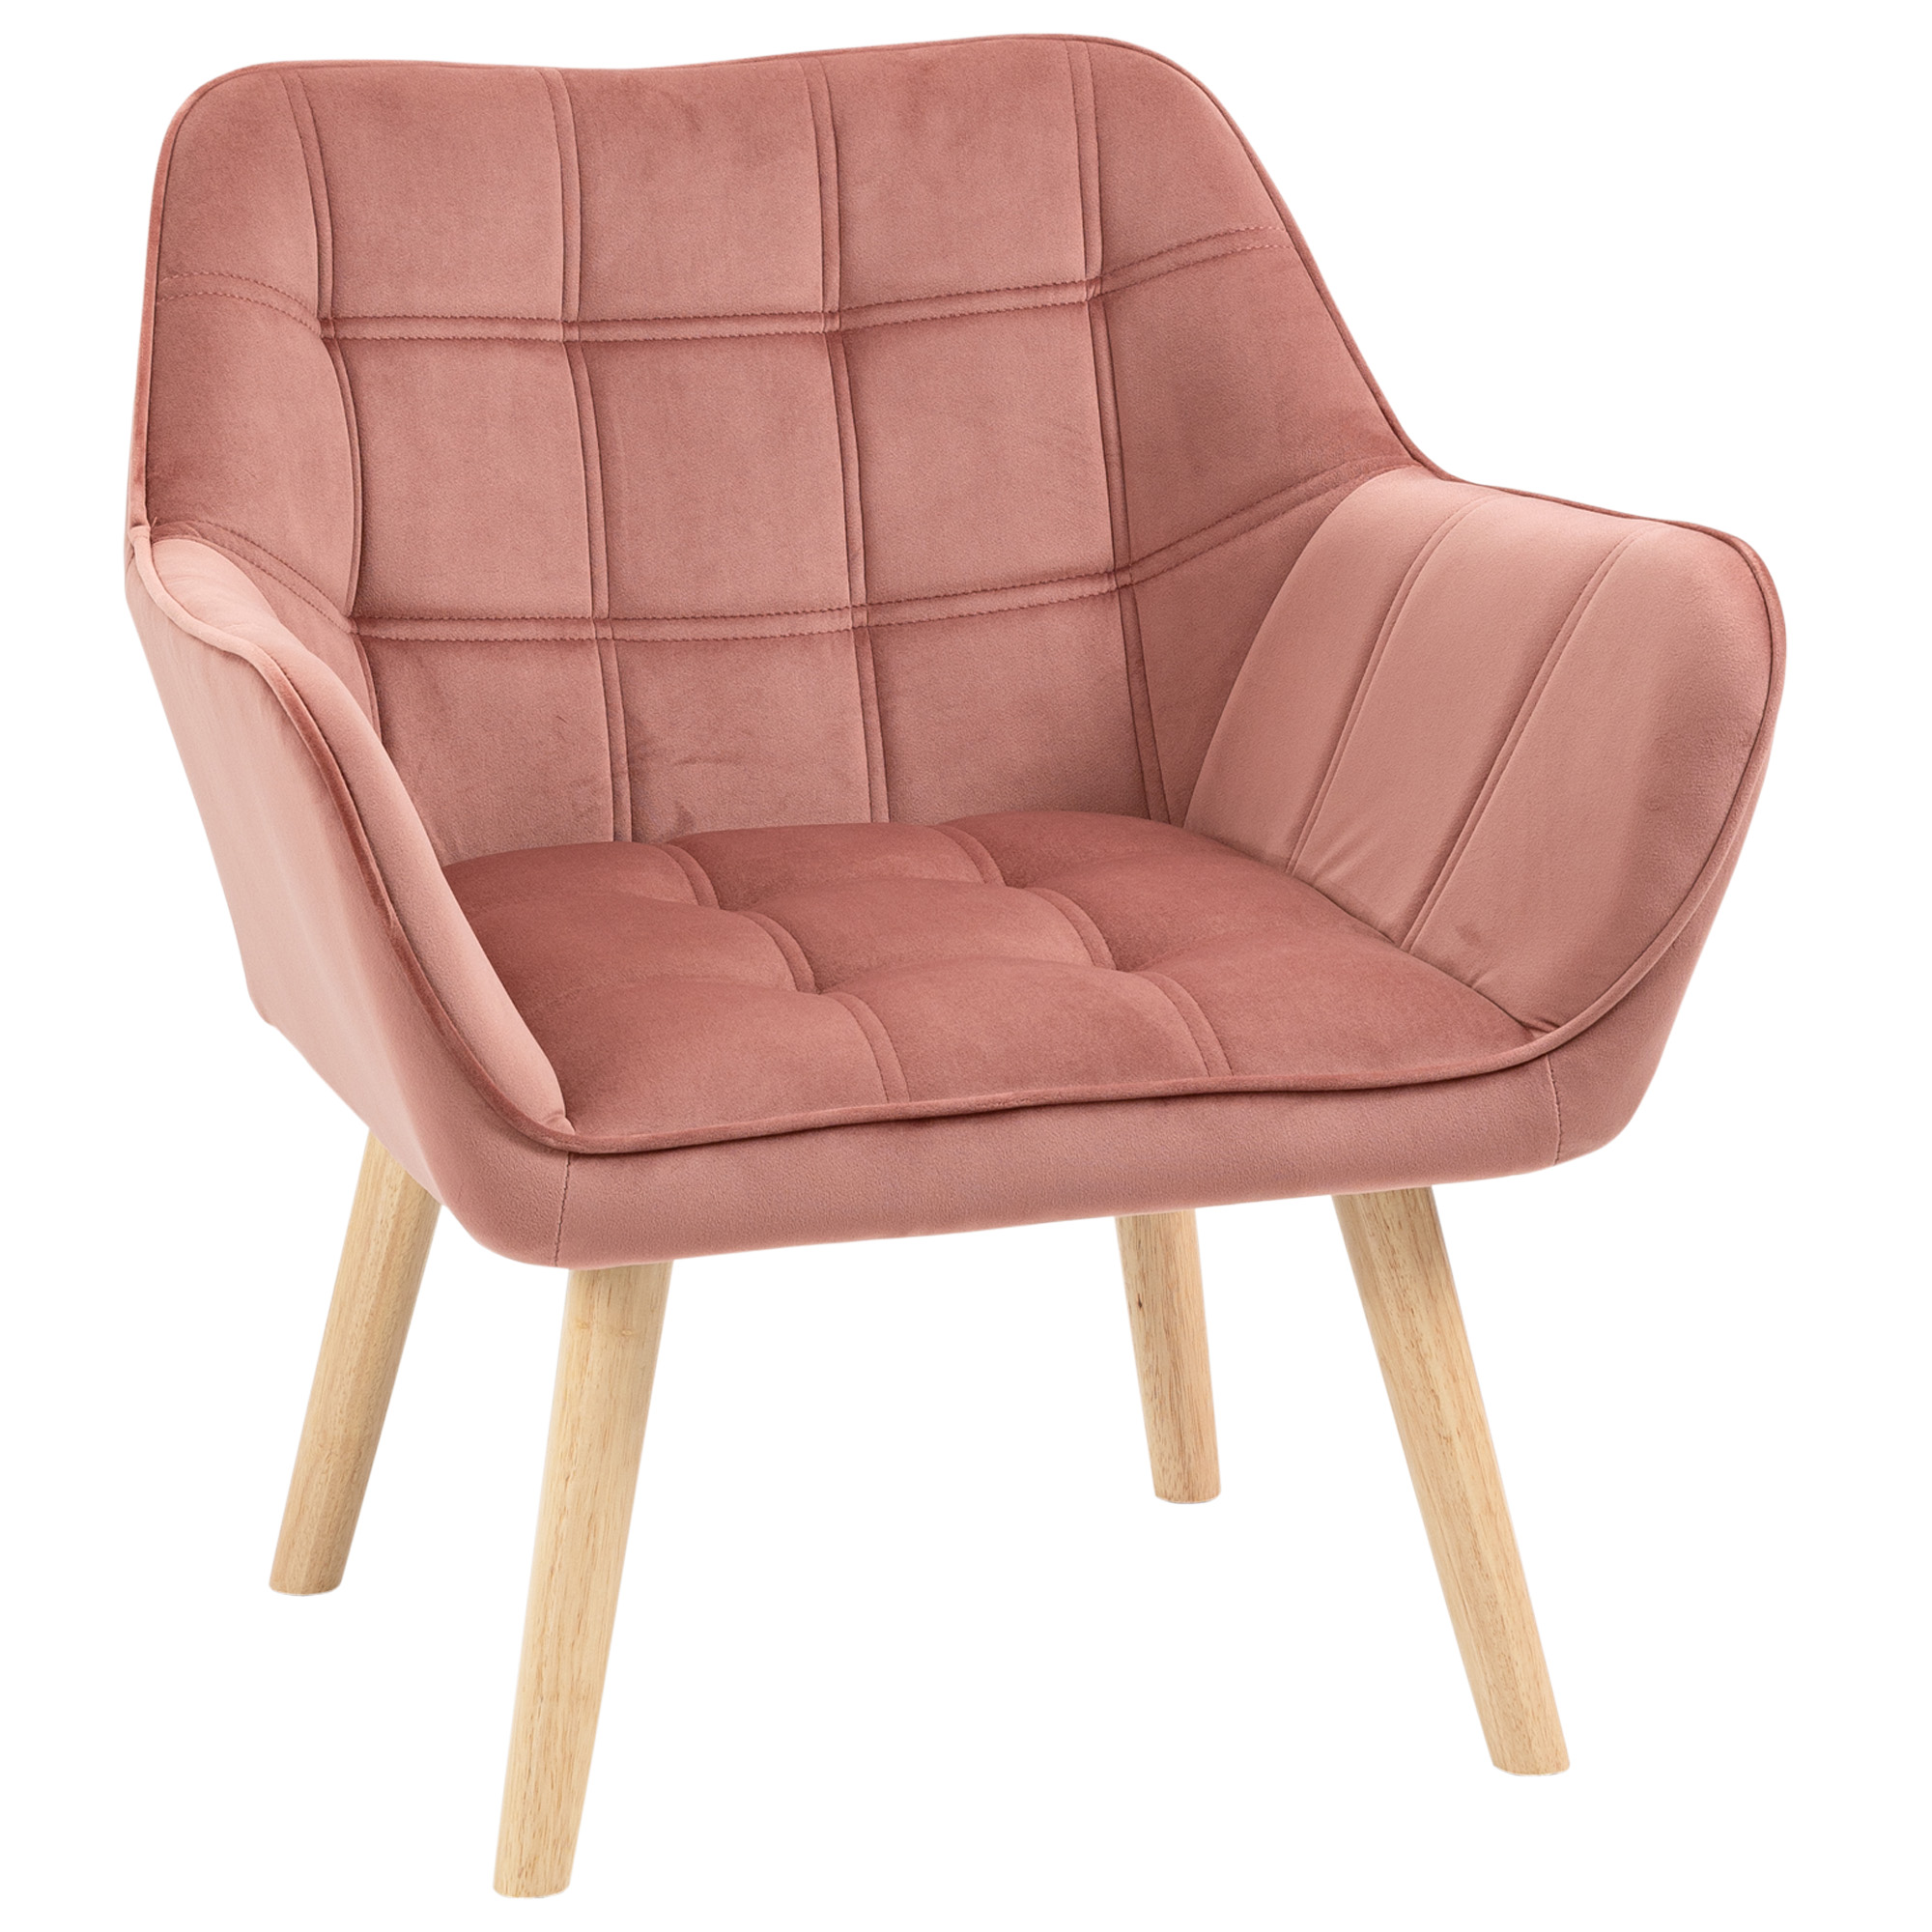 Πολυθρόνα HOMCOM Nordic style σε ξύλο και ροζ βελούδινο εφέ για σαλόνι ή γραφείο